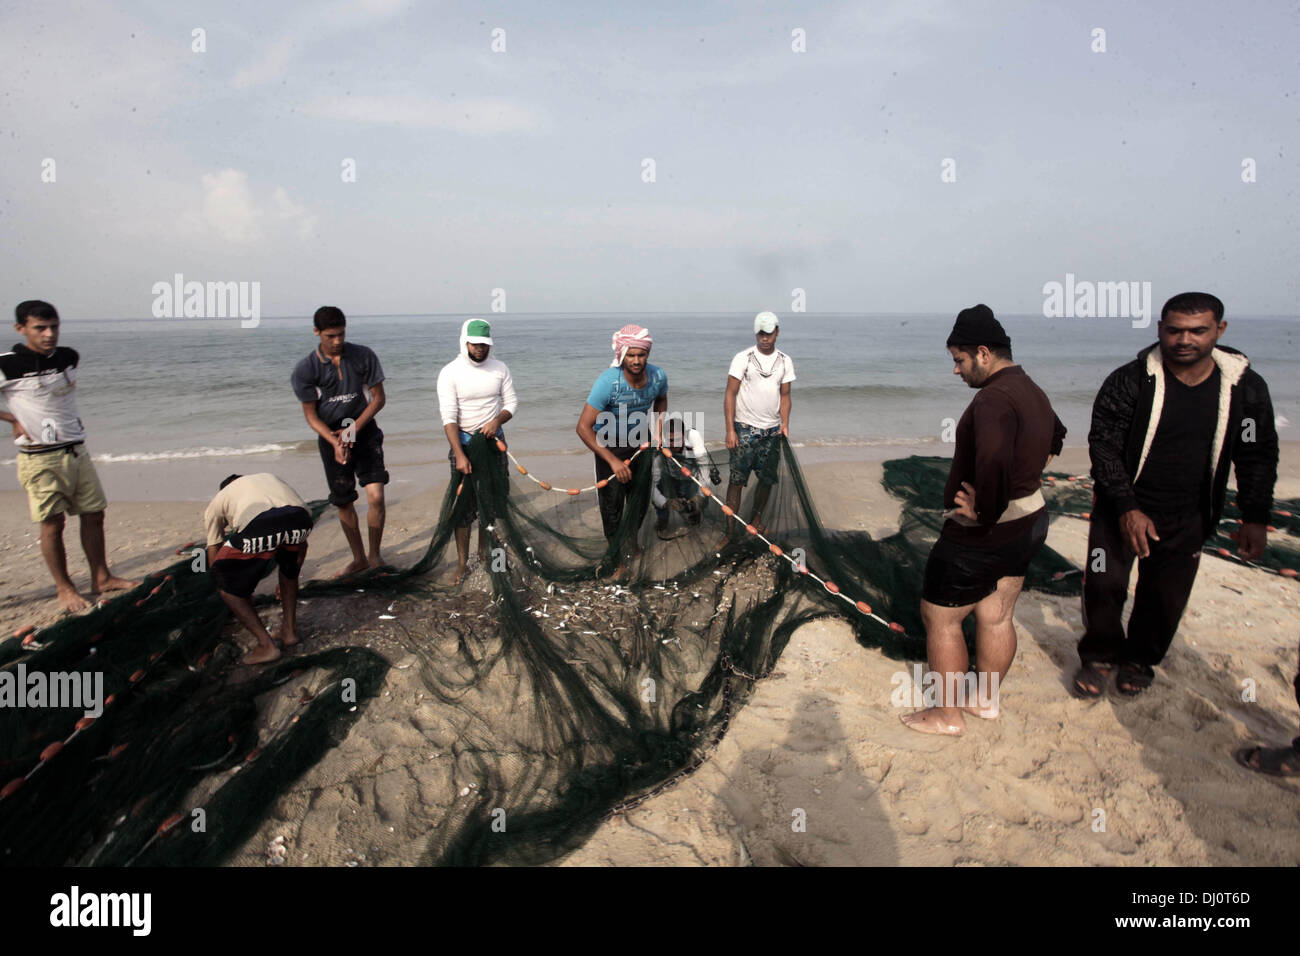 18. November 2013 - Gaza-Stadt, Gazastreifen, Palästina - palästinensische Fischer sammeln Fische aus ihrem Netz am Strand von Gaza-Stadt, am 18. November 2013. Israel beschränkt die Fischereizone auf drei Seemeilen nach der Entführung des israelischen Soldaten Gilad Shalit im Jahr 2007. Die Oslo-Abkommen 1993 mit der palästinensischen Autonomiebehörde unterzeichneten besagen, dass Gaza s Fischereizone auf 20 Seemeilen auszudehnen. Die Zone wurde dann erweitert auf sechs Seemeilen als Bestandteil der ägyptischen vermittelten Waffenstillstand im November 2012, aber Israel zeitweise reduzieren auf drei Seemeilen jedes tim Stockfoto